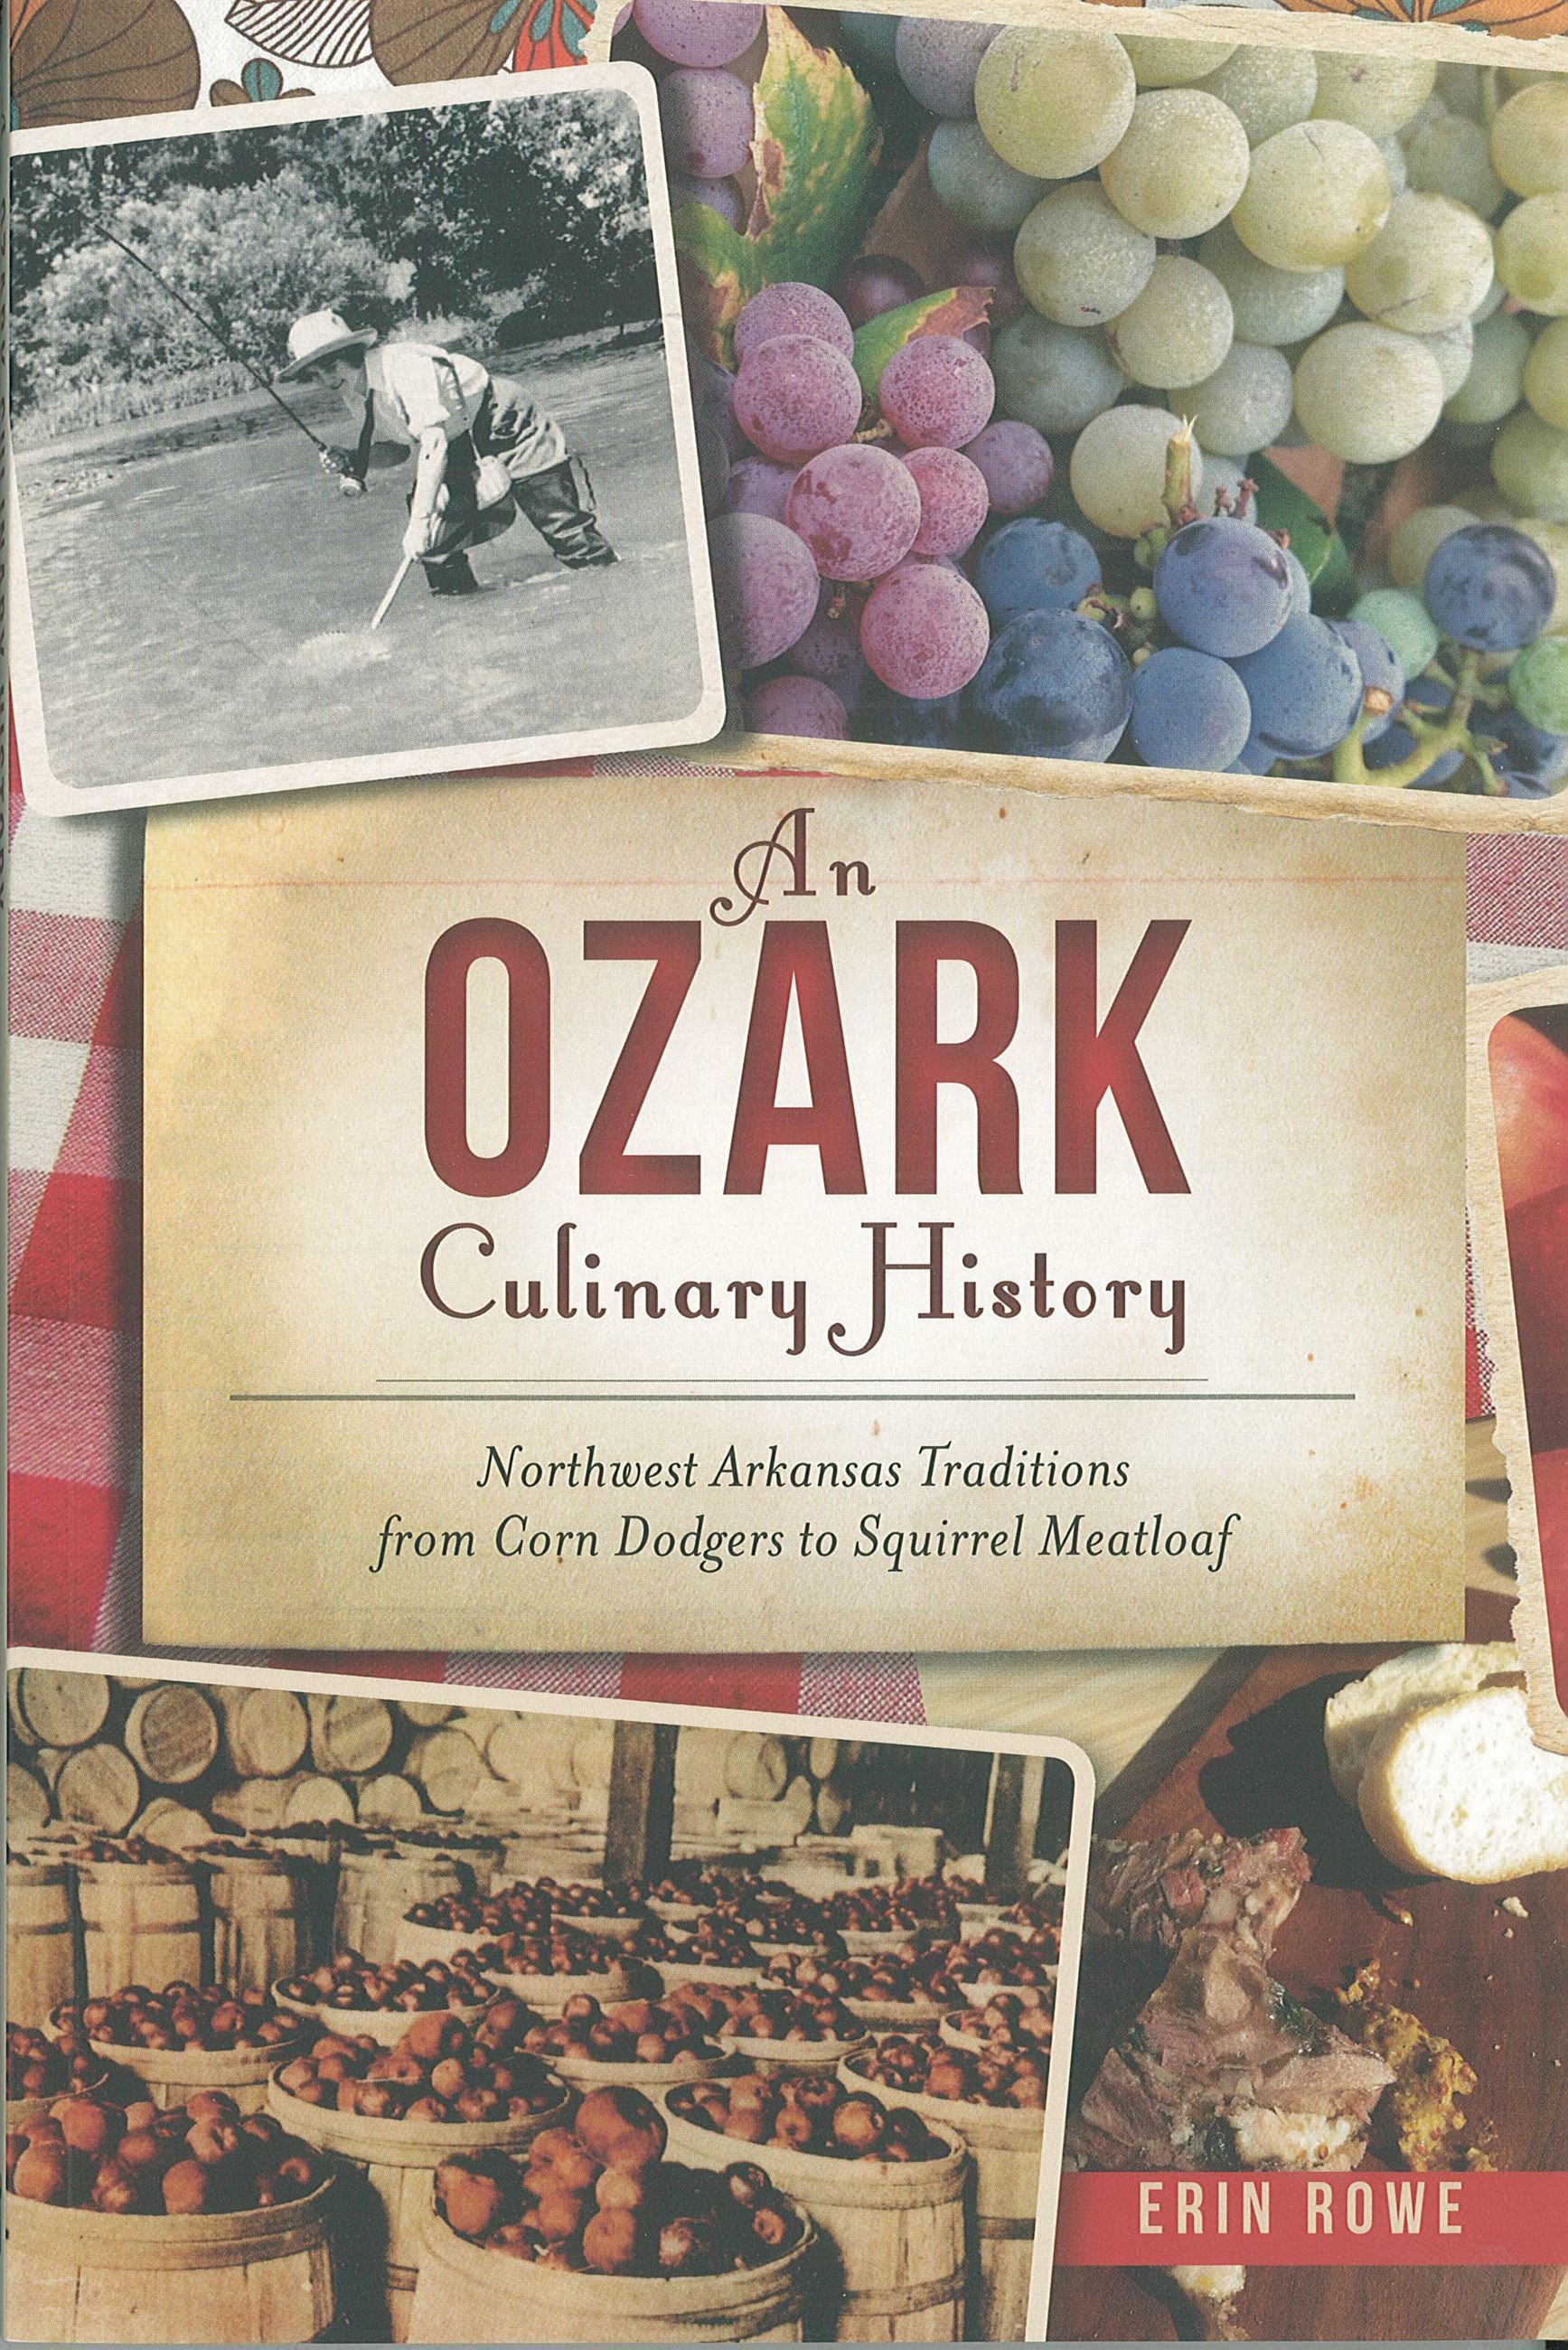 Ozark Culinary History